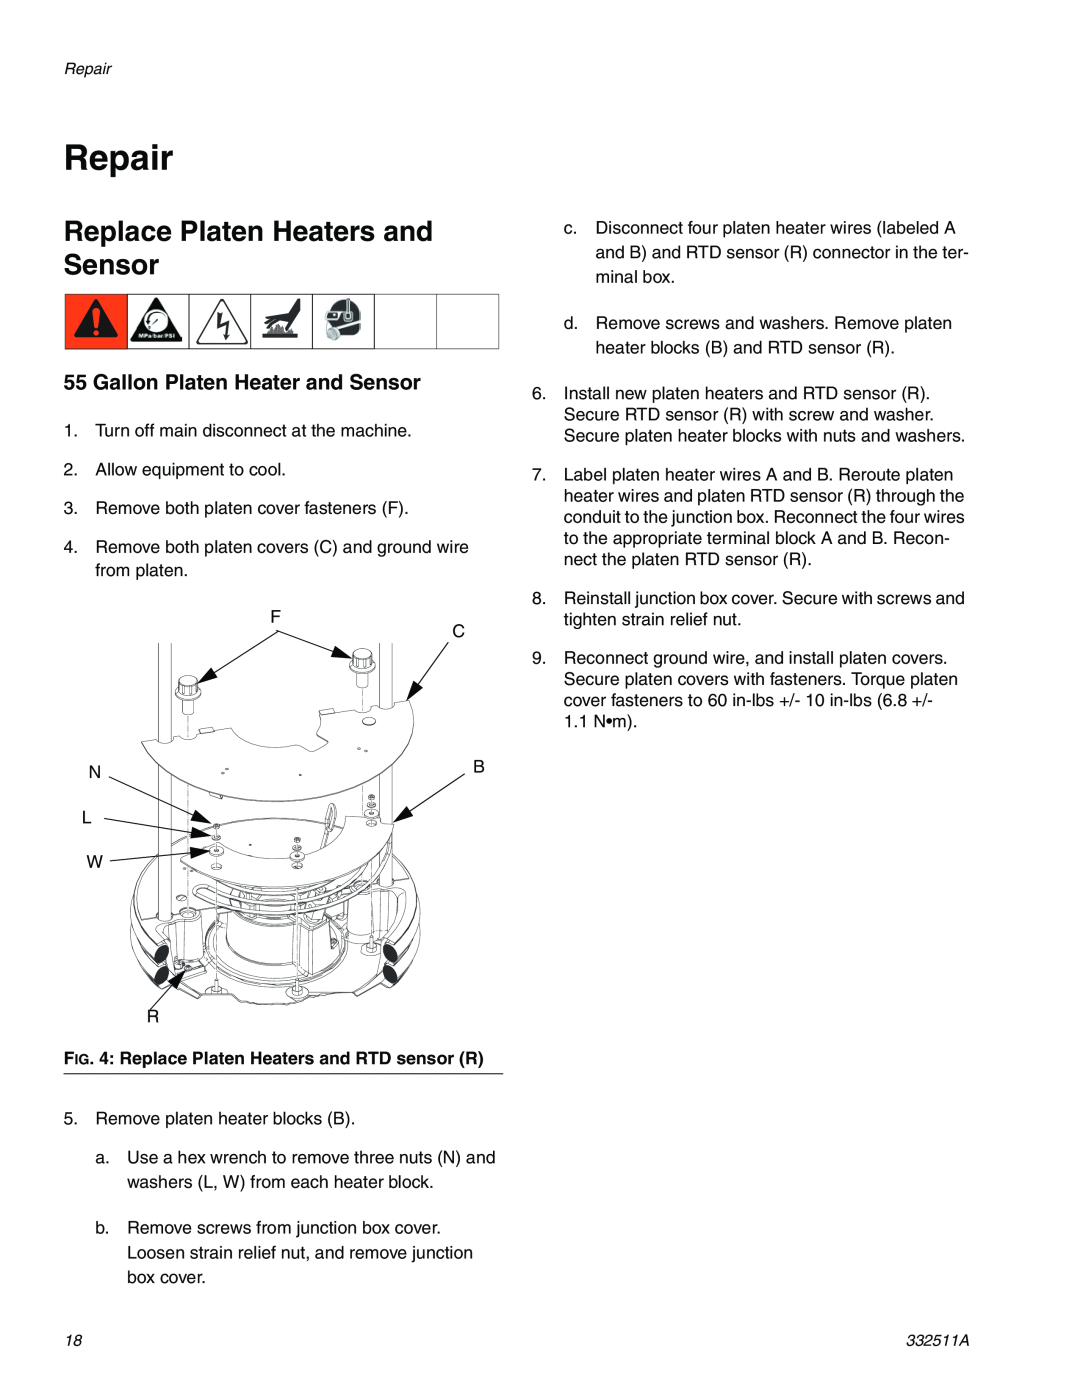 Graco 24R200 operation manual Repair, Replace Platen Heaters and Sensor, Replace Platen Heaters and RTD sensor R 